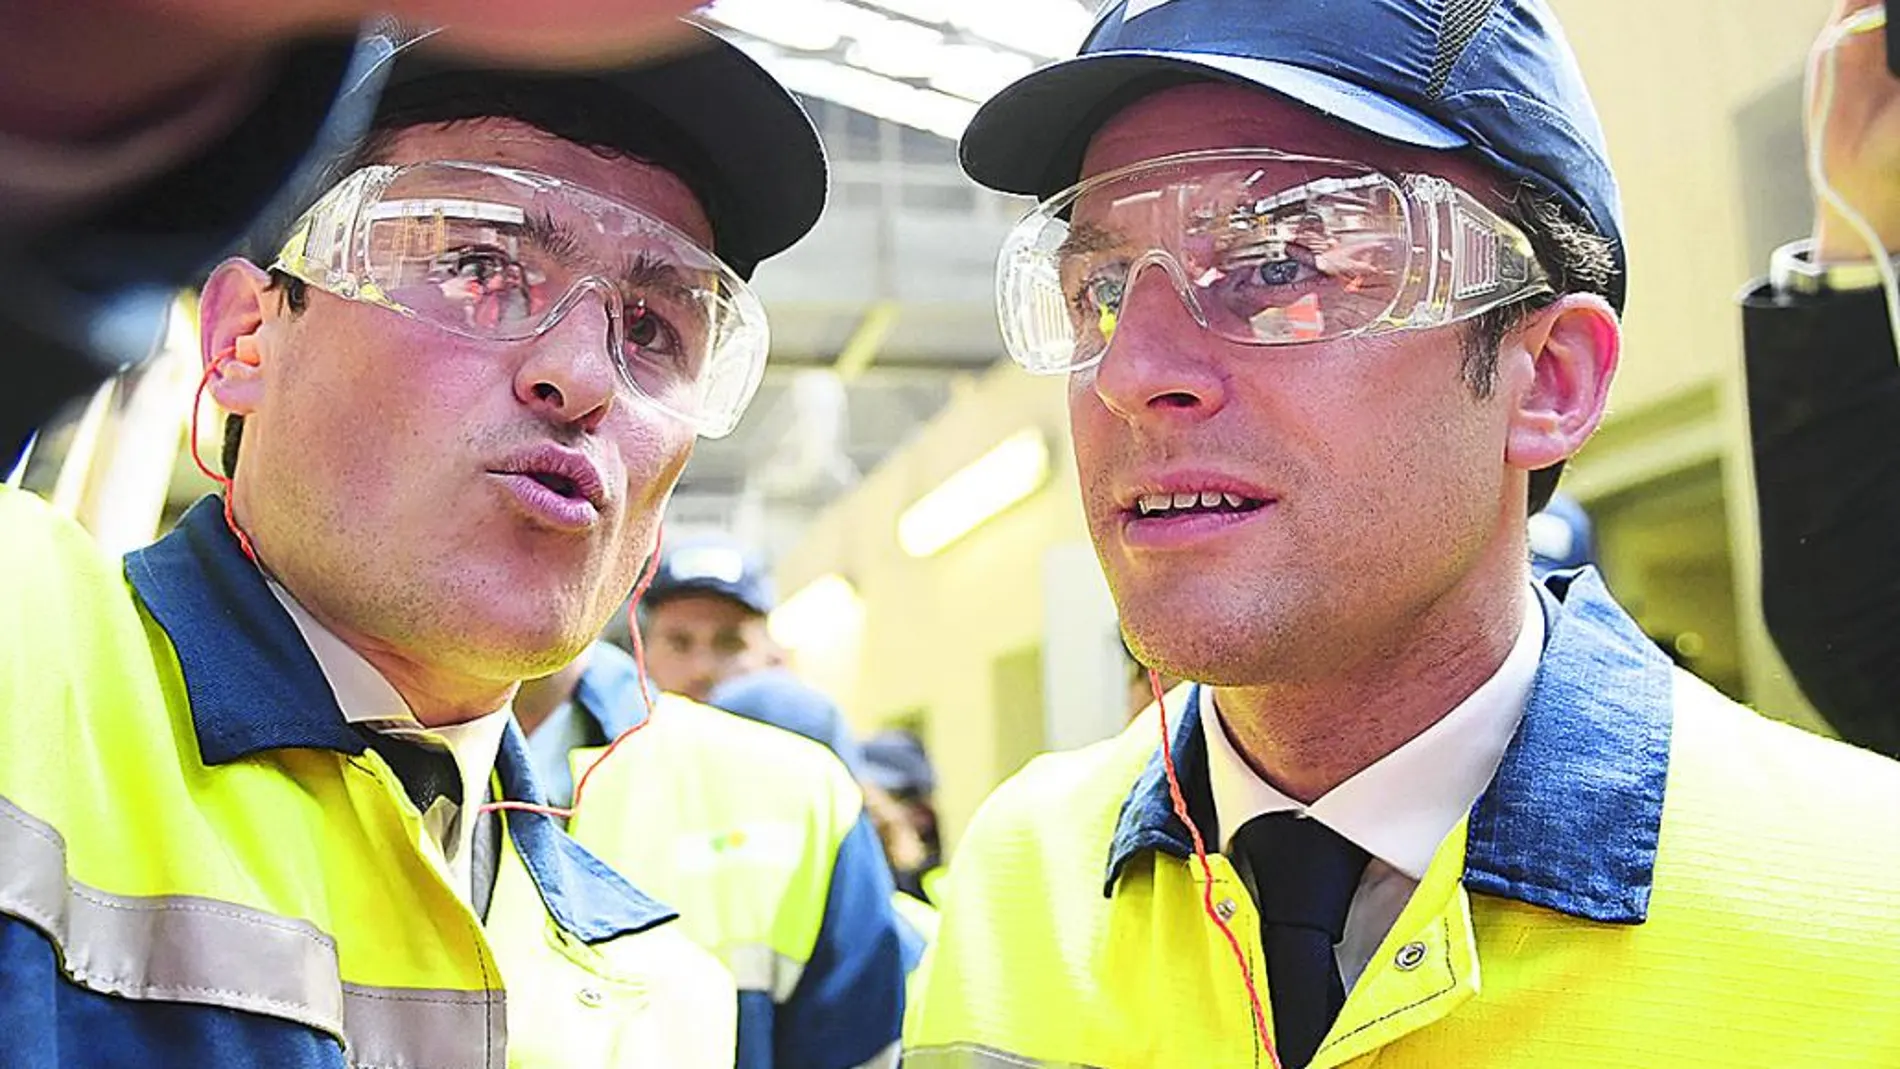 El candidato Emmanuel Macron, ataviado con mono y gorra de trabajo, visita una fábrica de cristal en Albi